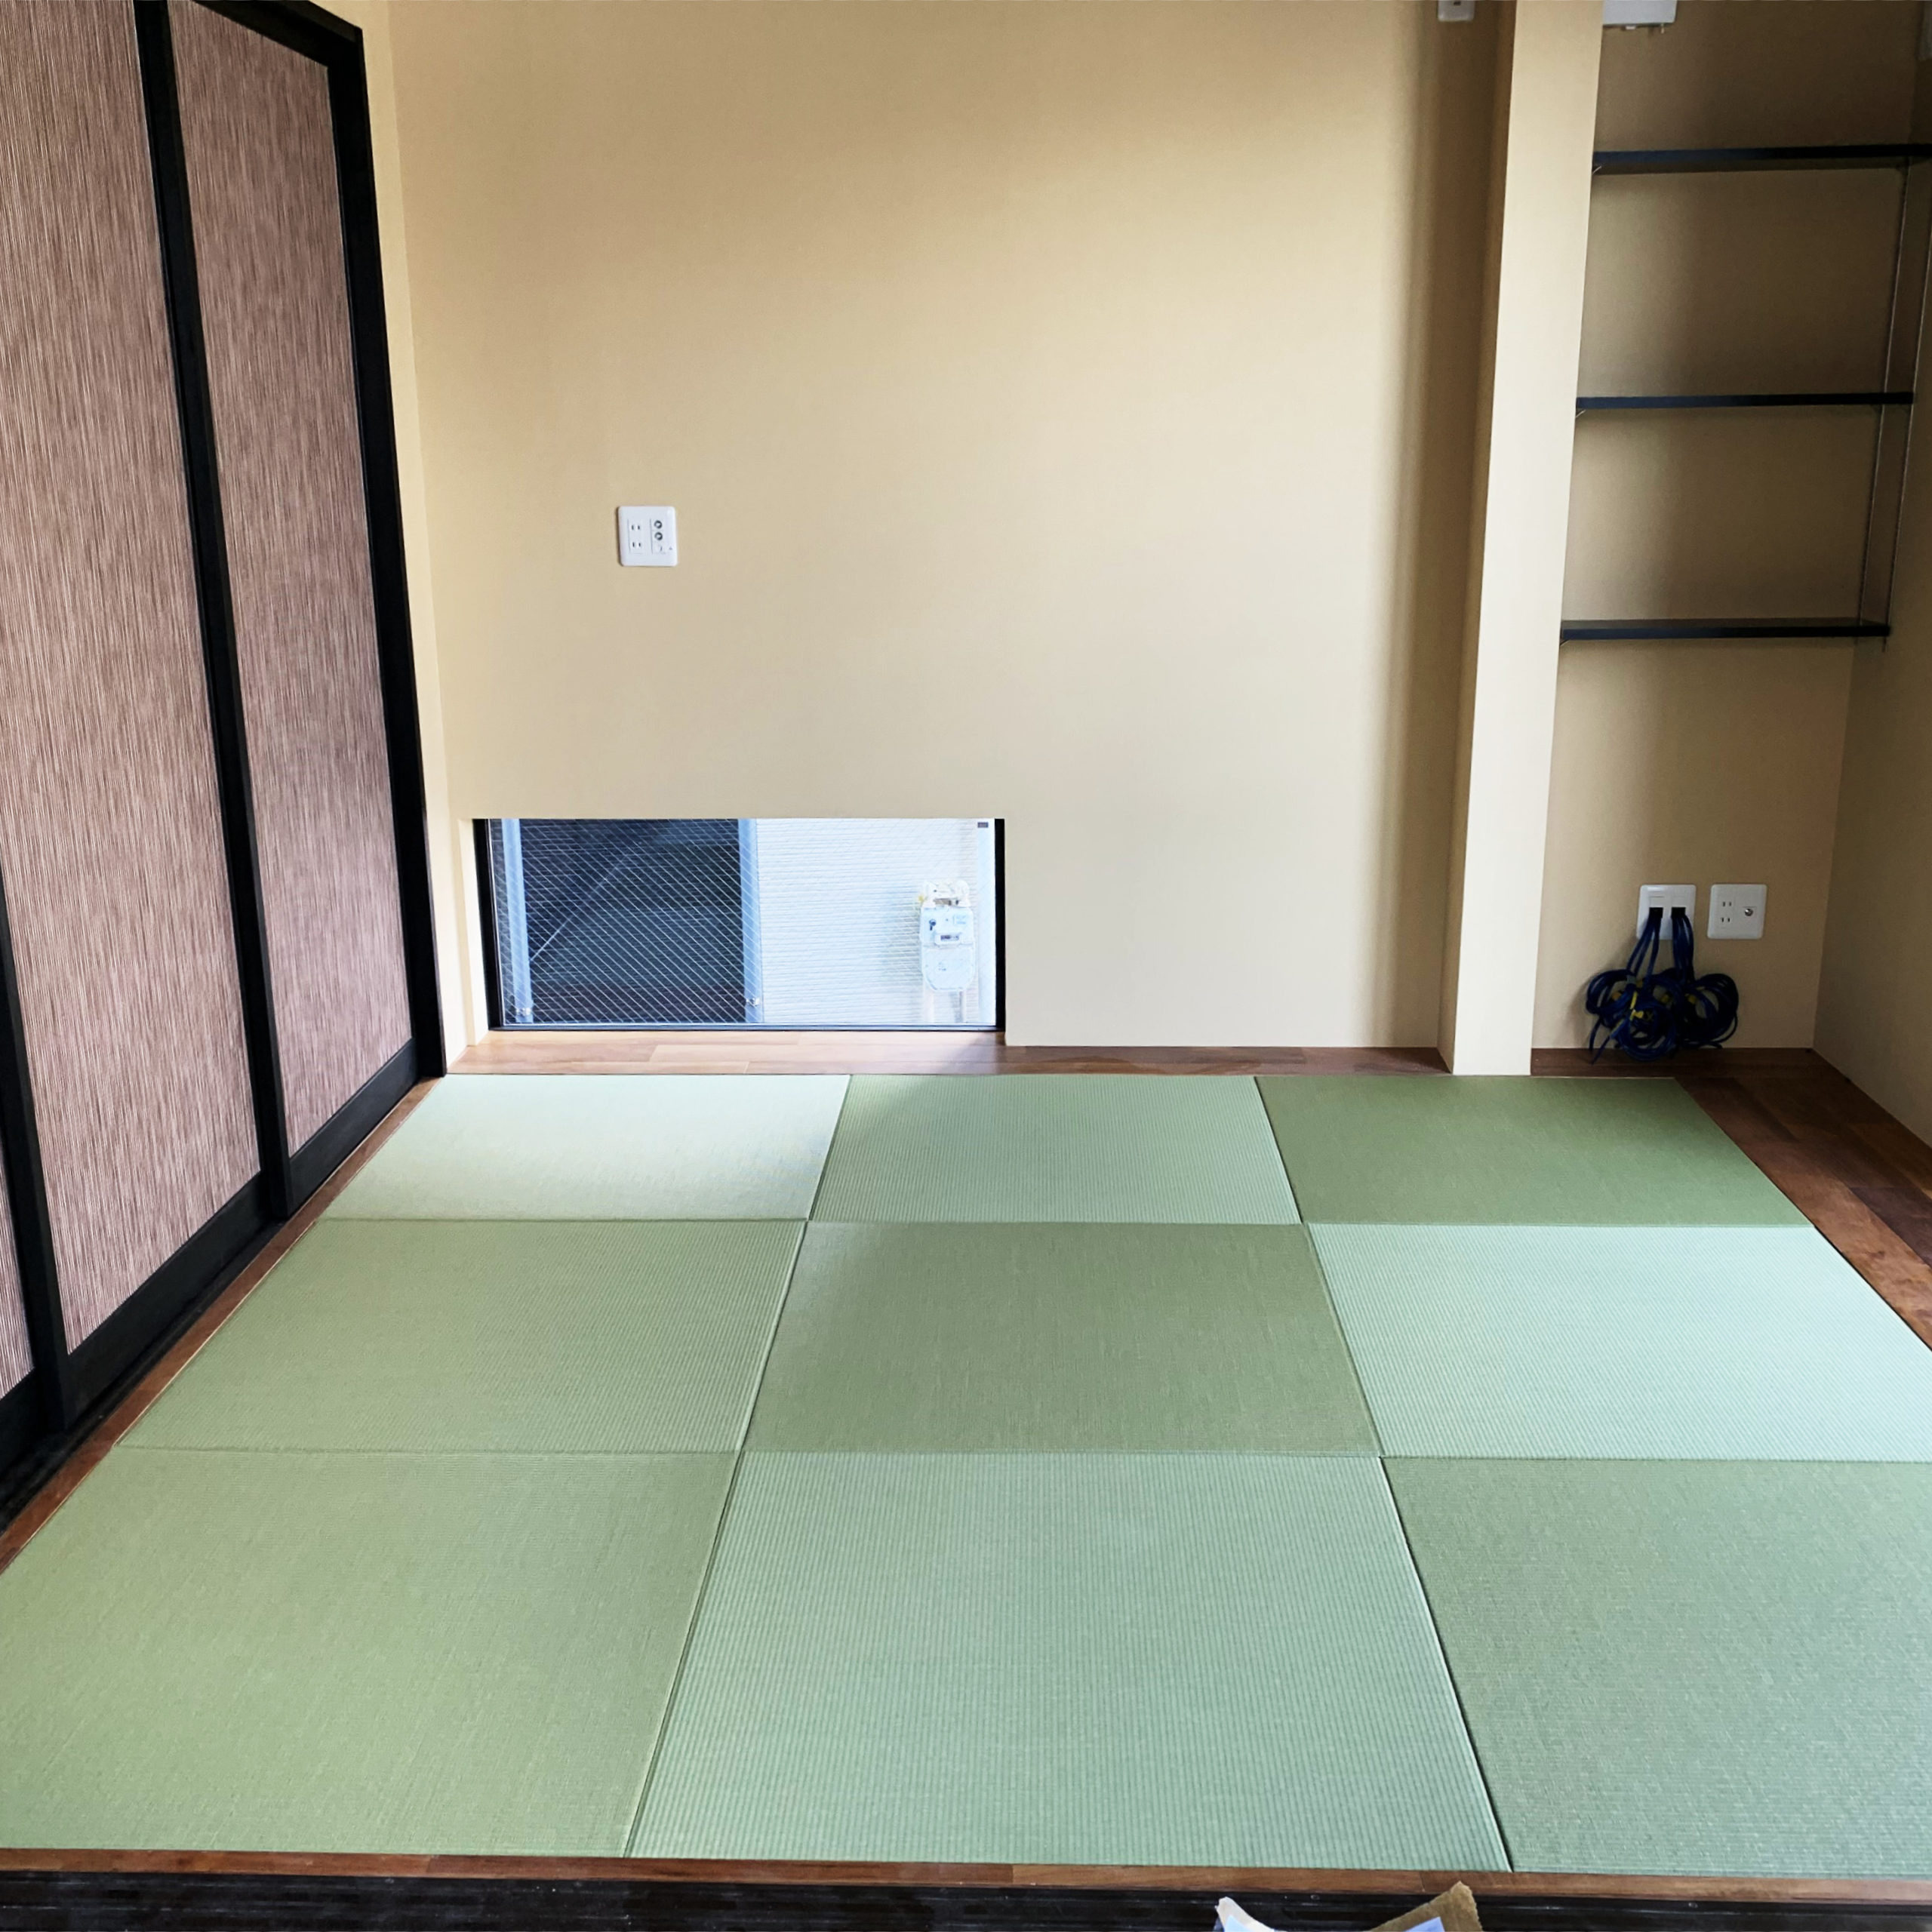 和室のゆがみに合わせて琉球畳をカスタマイズ 微妙な誤差にも対応できます